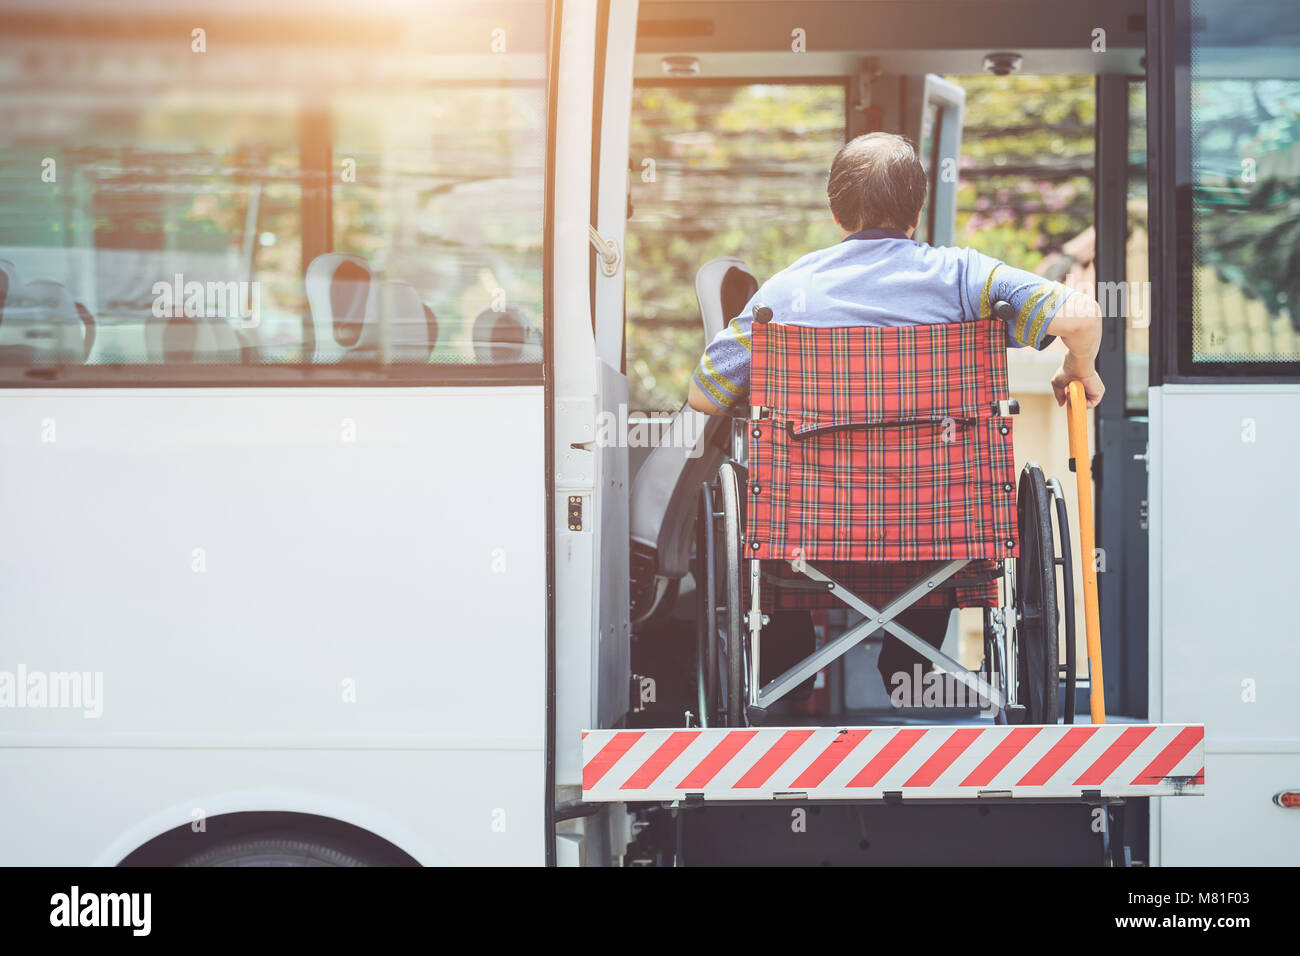 Mobilité concept bus : mobilité des gens assis sur fauteuil roulant et aller à l'autobus public Banque D'Images